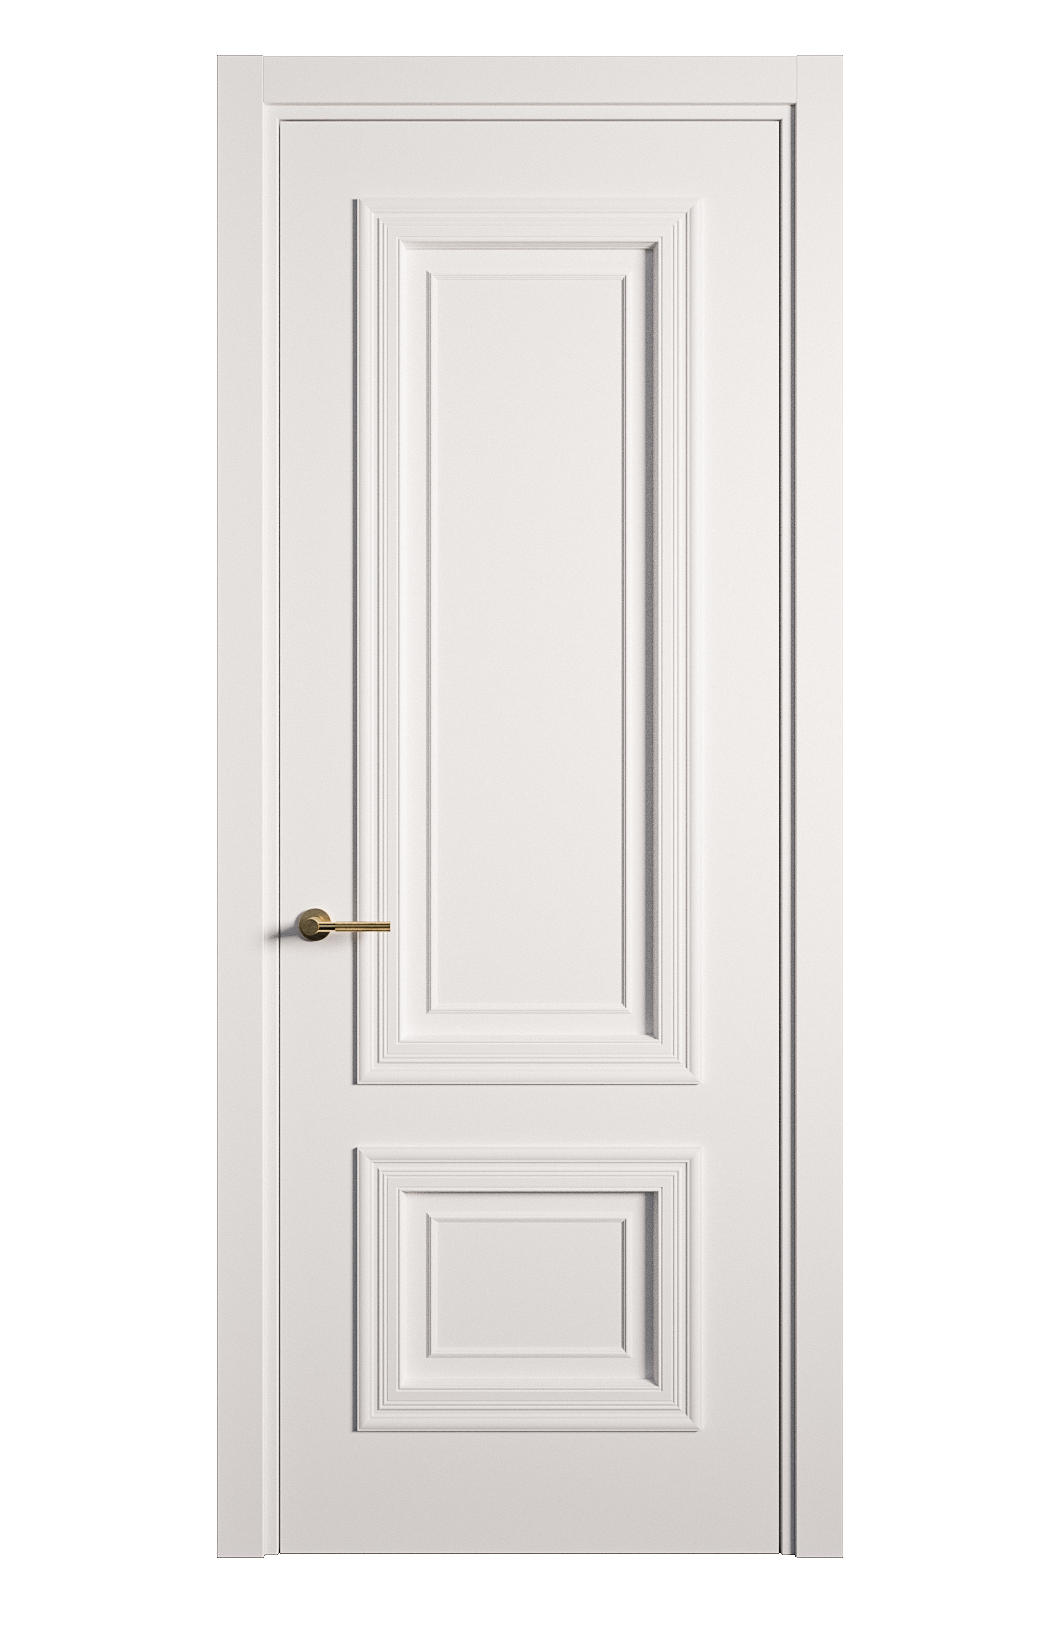 Межкомнатная дверь Мальта-1 глухая эмаль ral 9003 26978